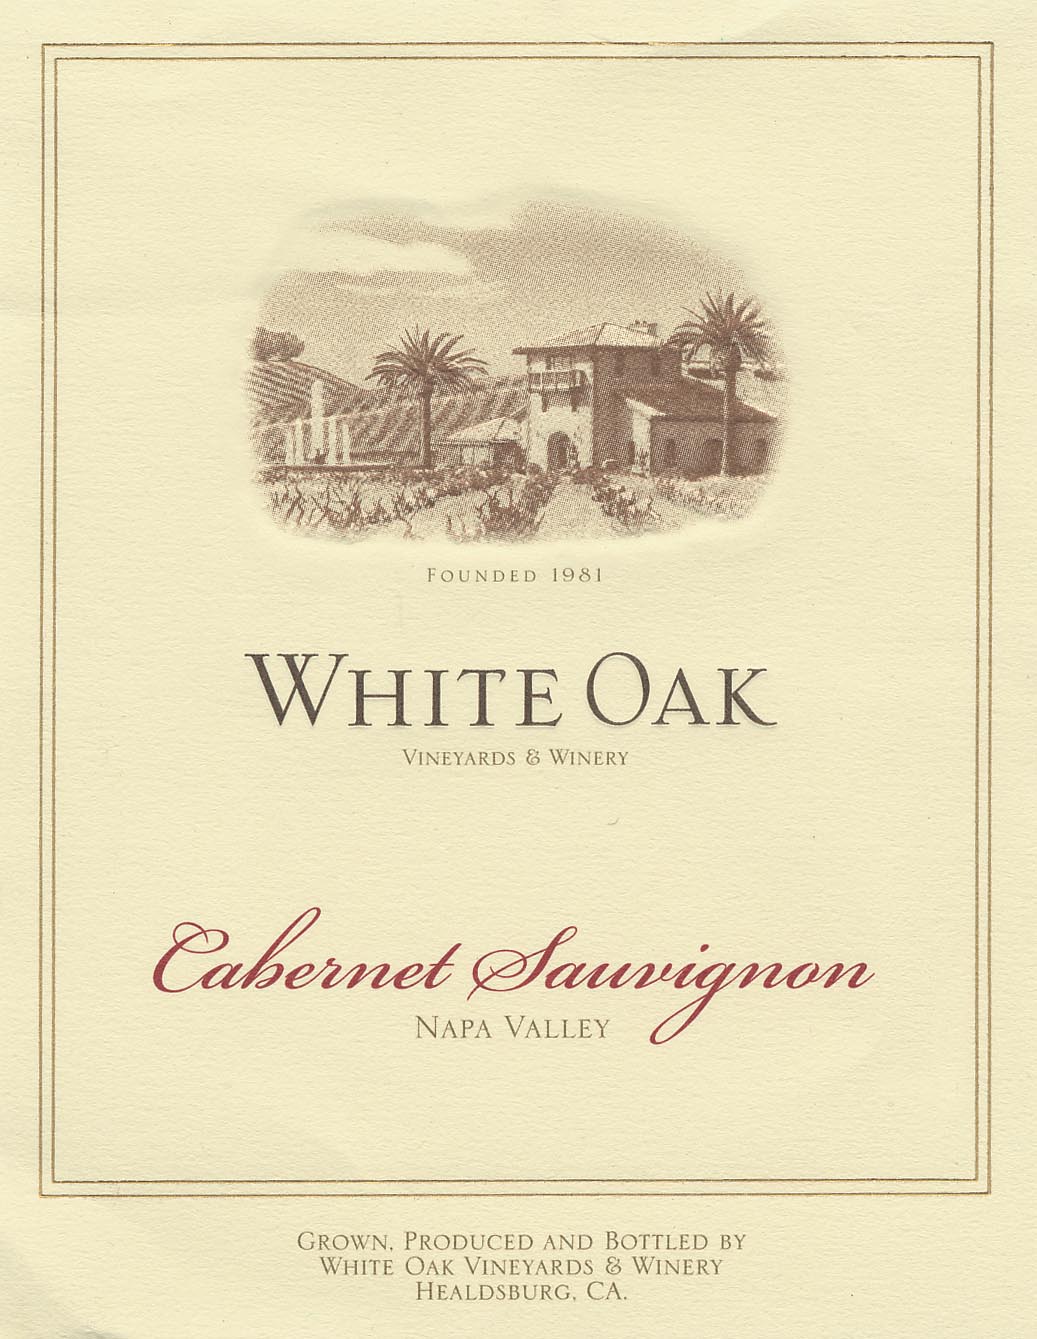 White Oak - Cabernet Sauvignon label